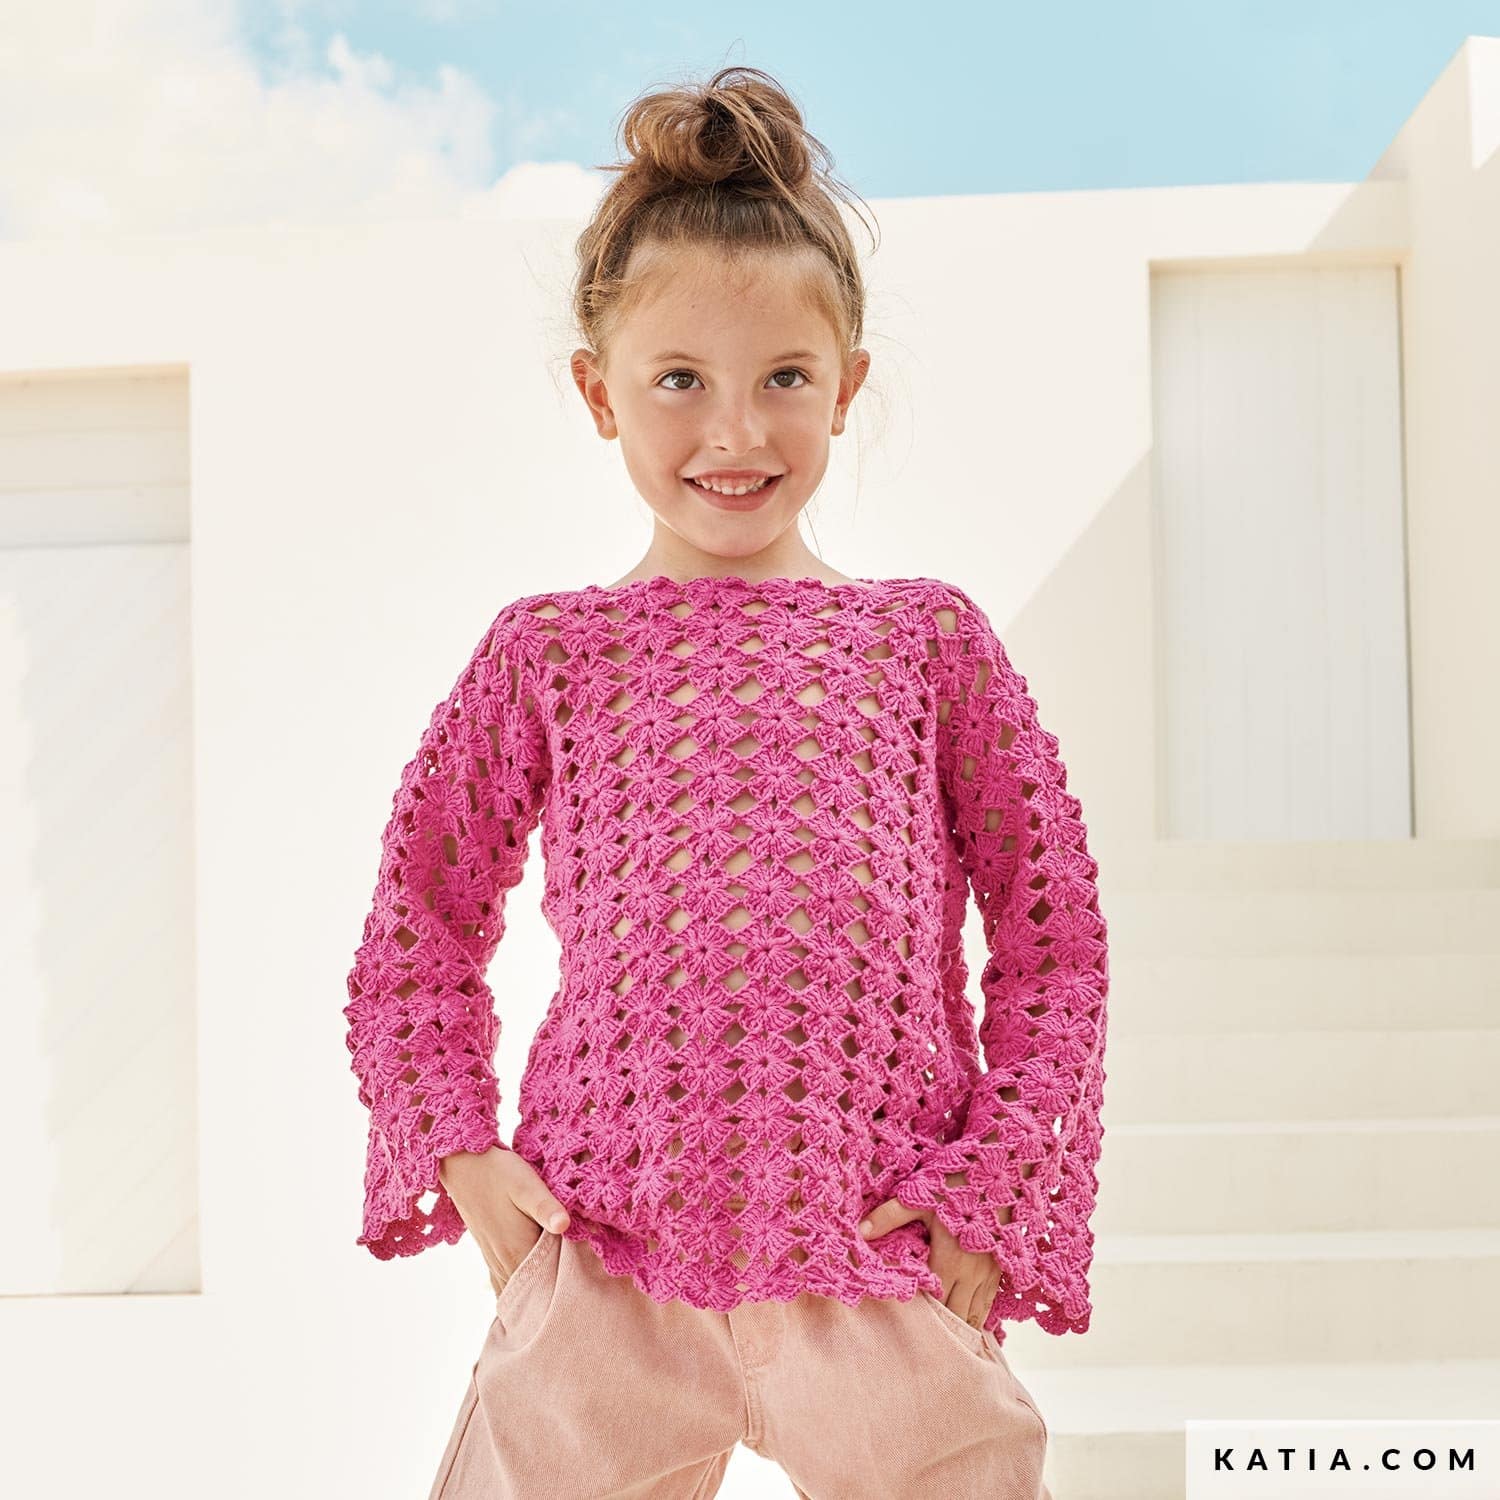 Découvrez les 5 nouveaux kits tricot et crochet pour débutants de Katia